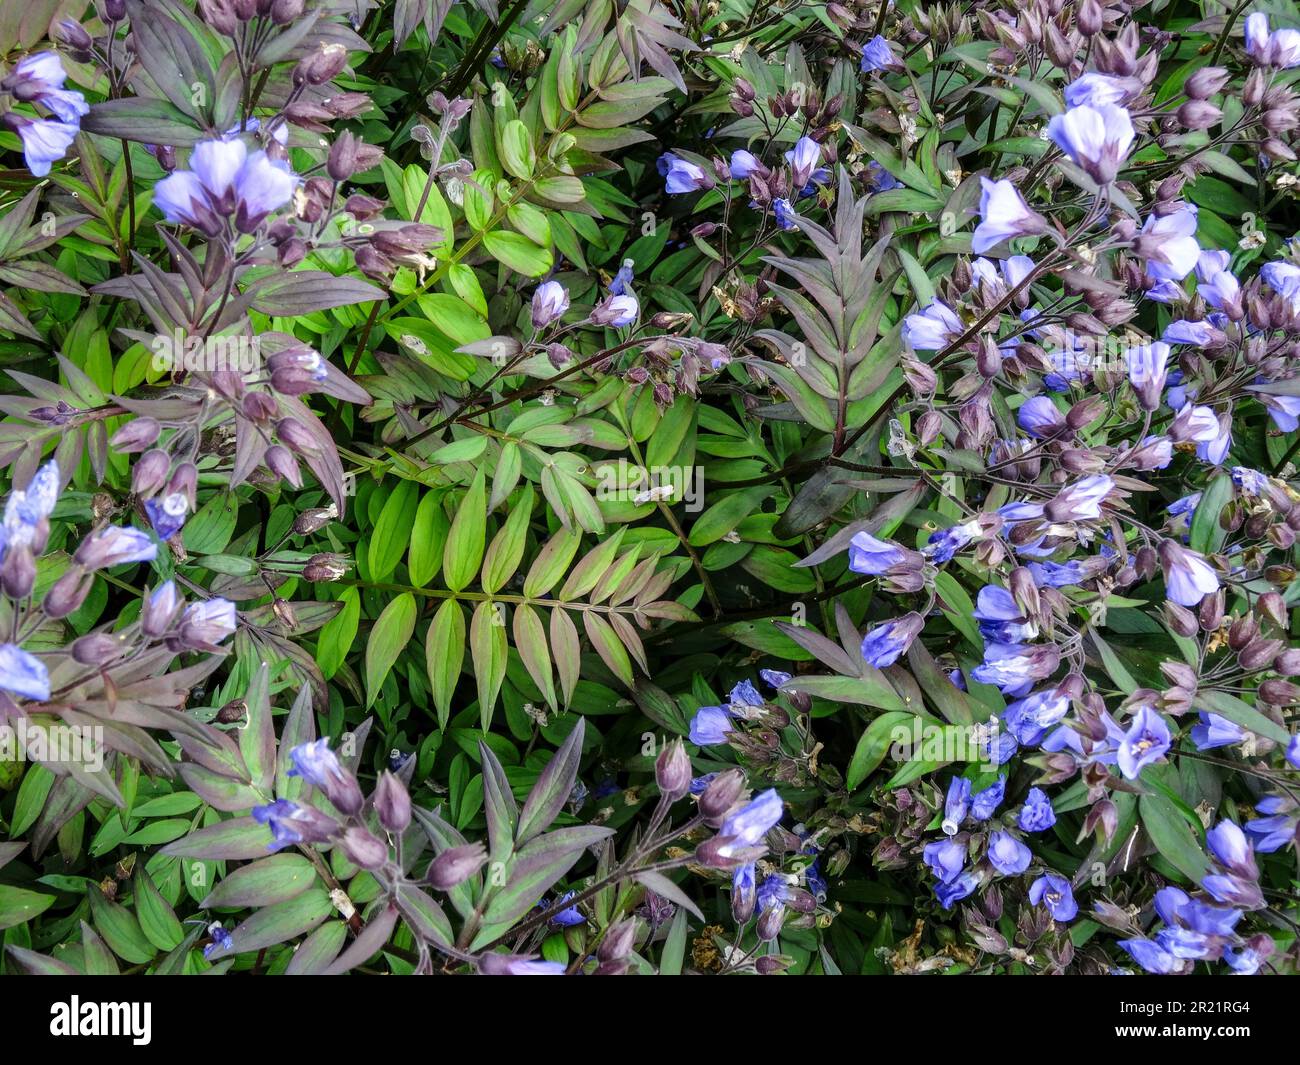 Close up natural flowering plant portrait of Polemonium - Heaven Scent Stock Photo